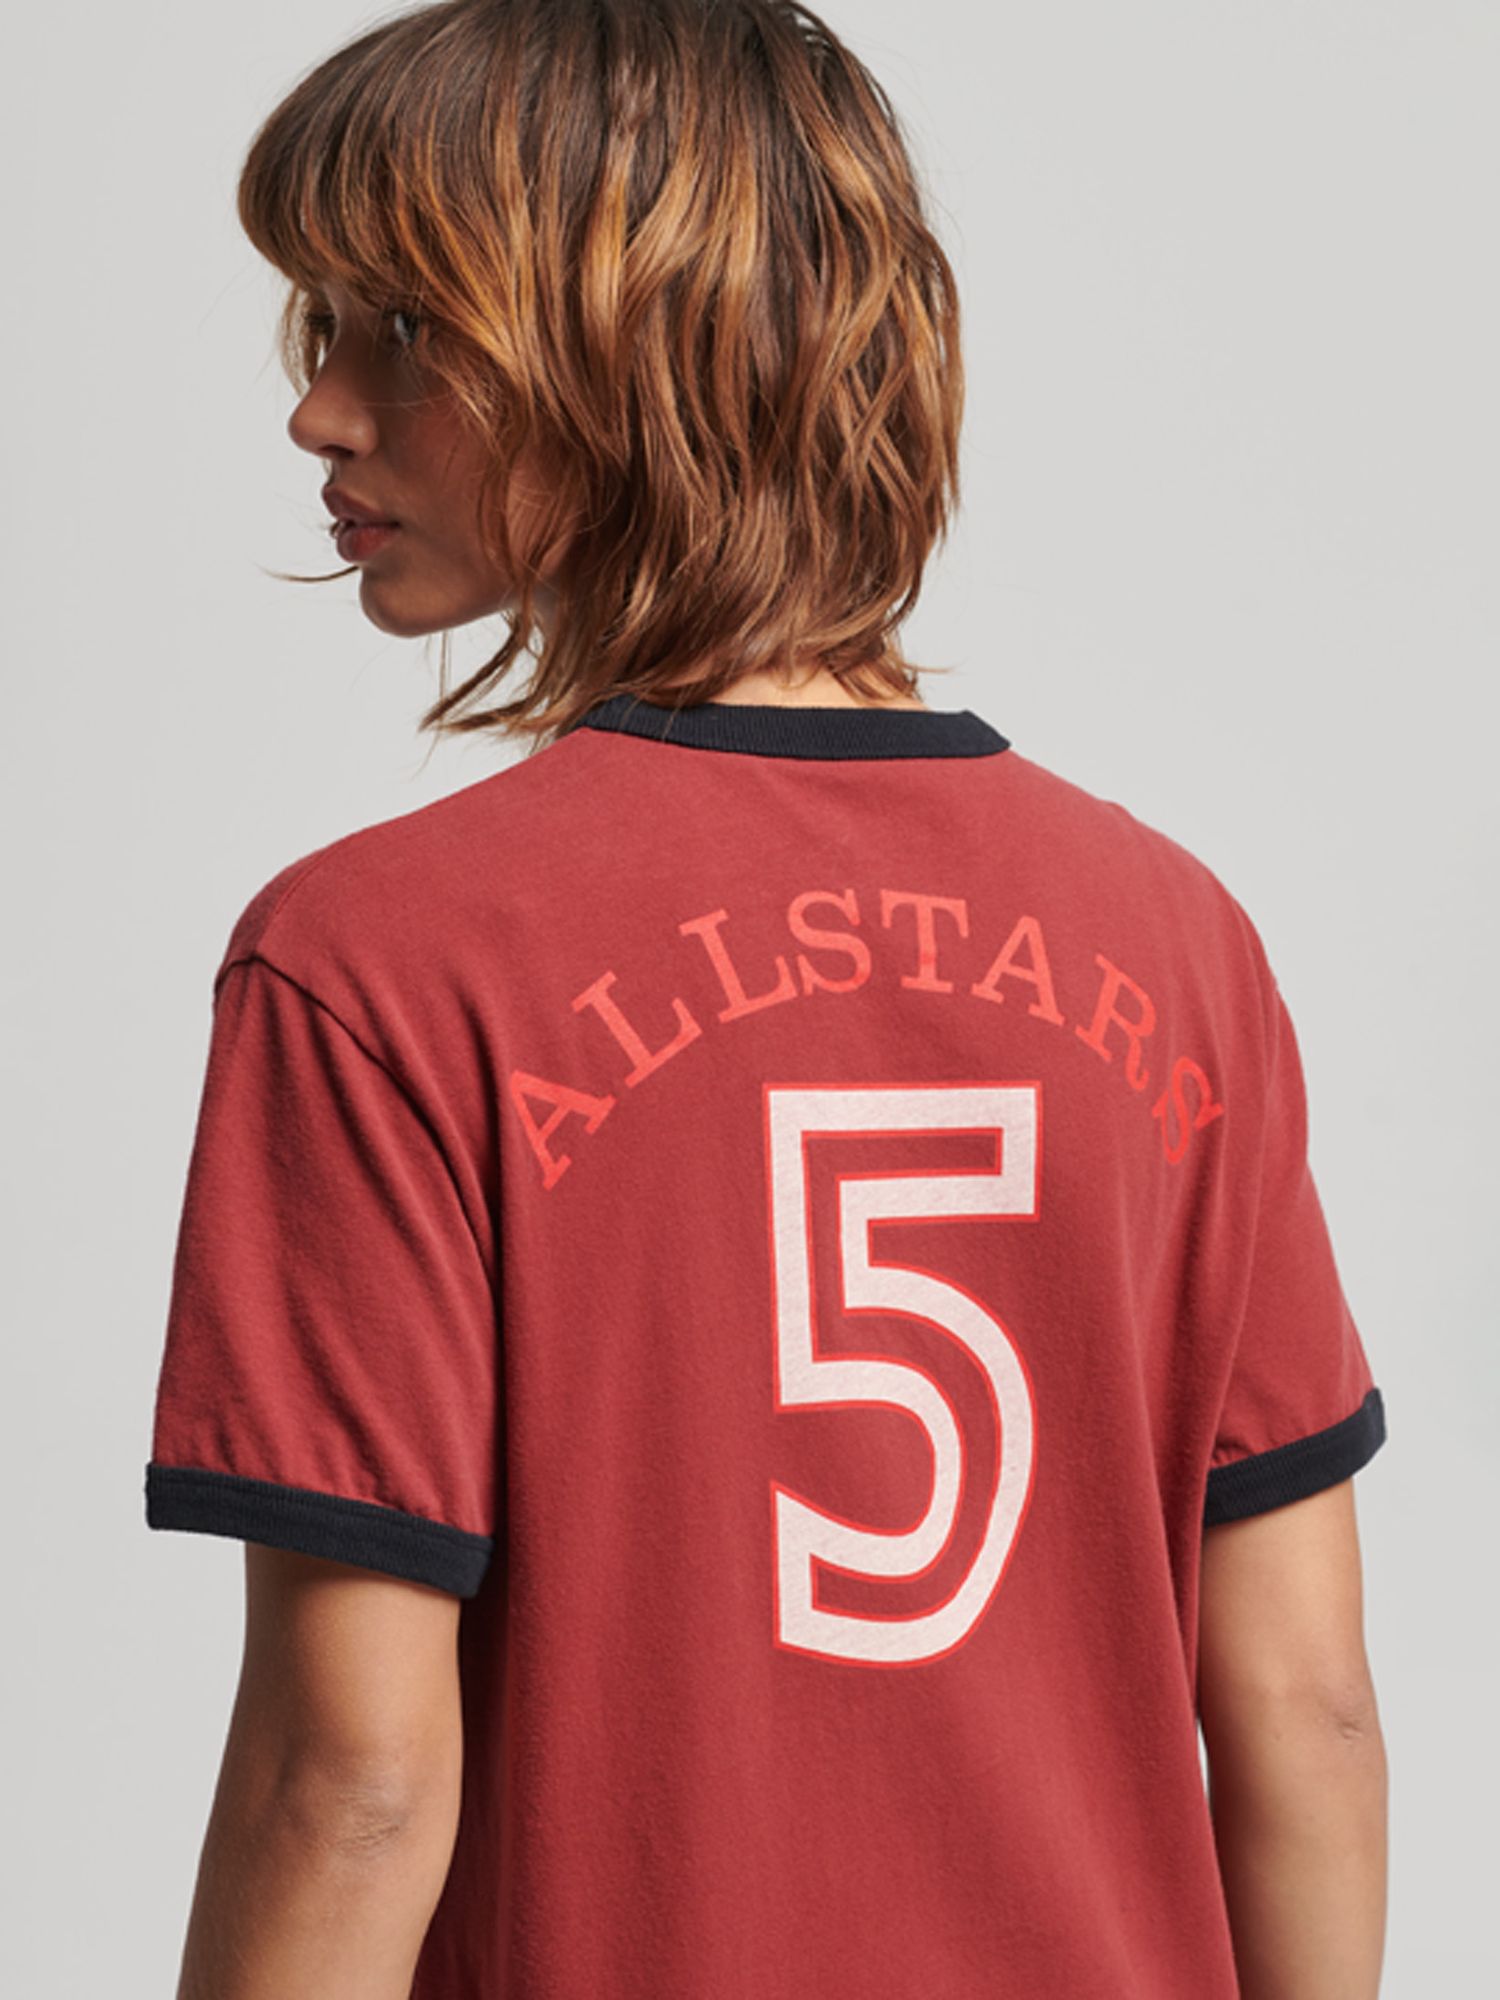 Superdry Ringspun All Stars Allstars #9 The Shining T-shirt Size